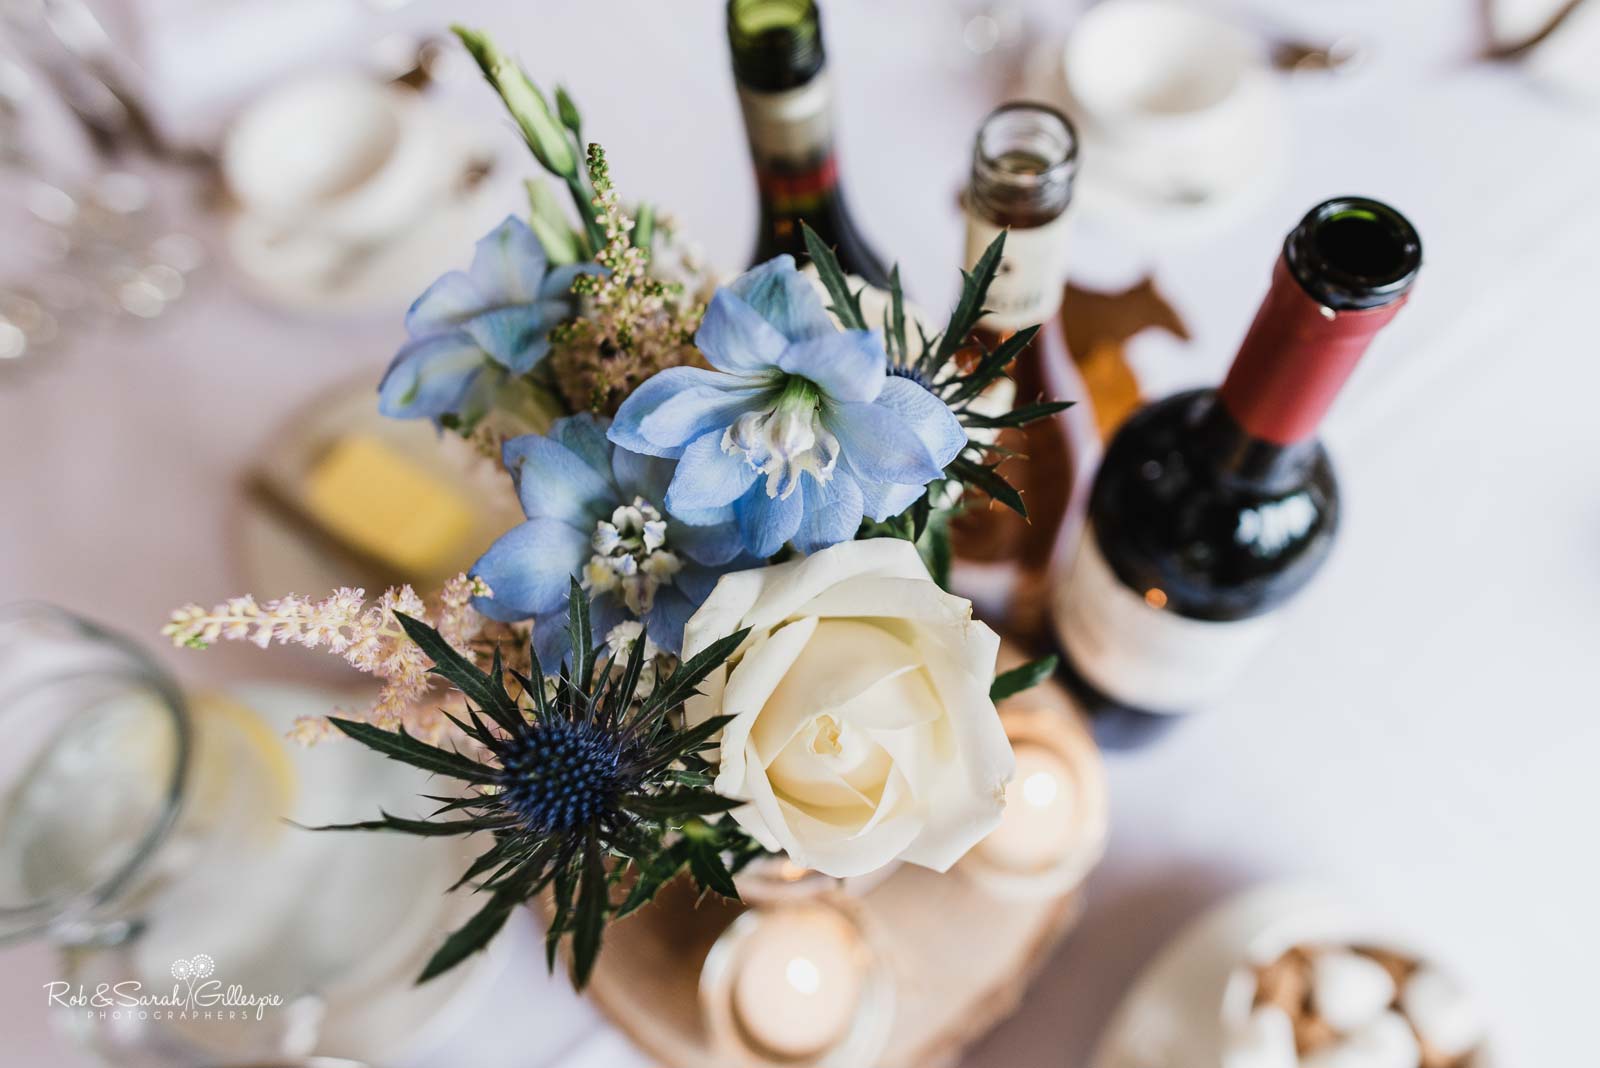 Wedding breakfast details with flowersand wine bottles